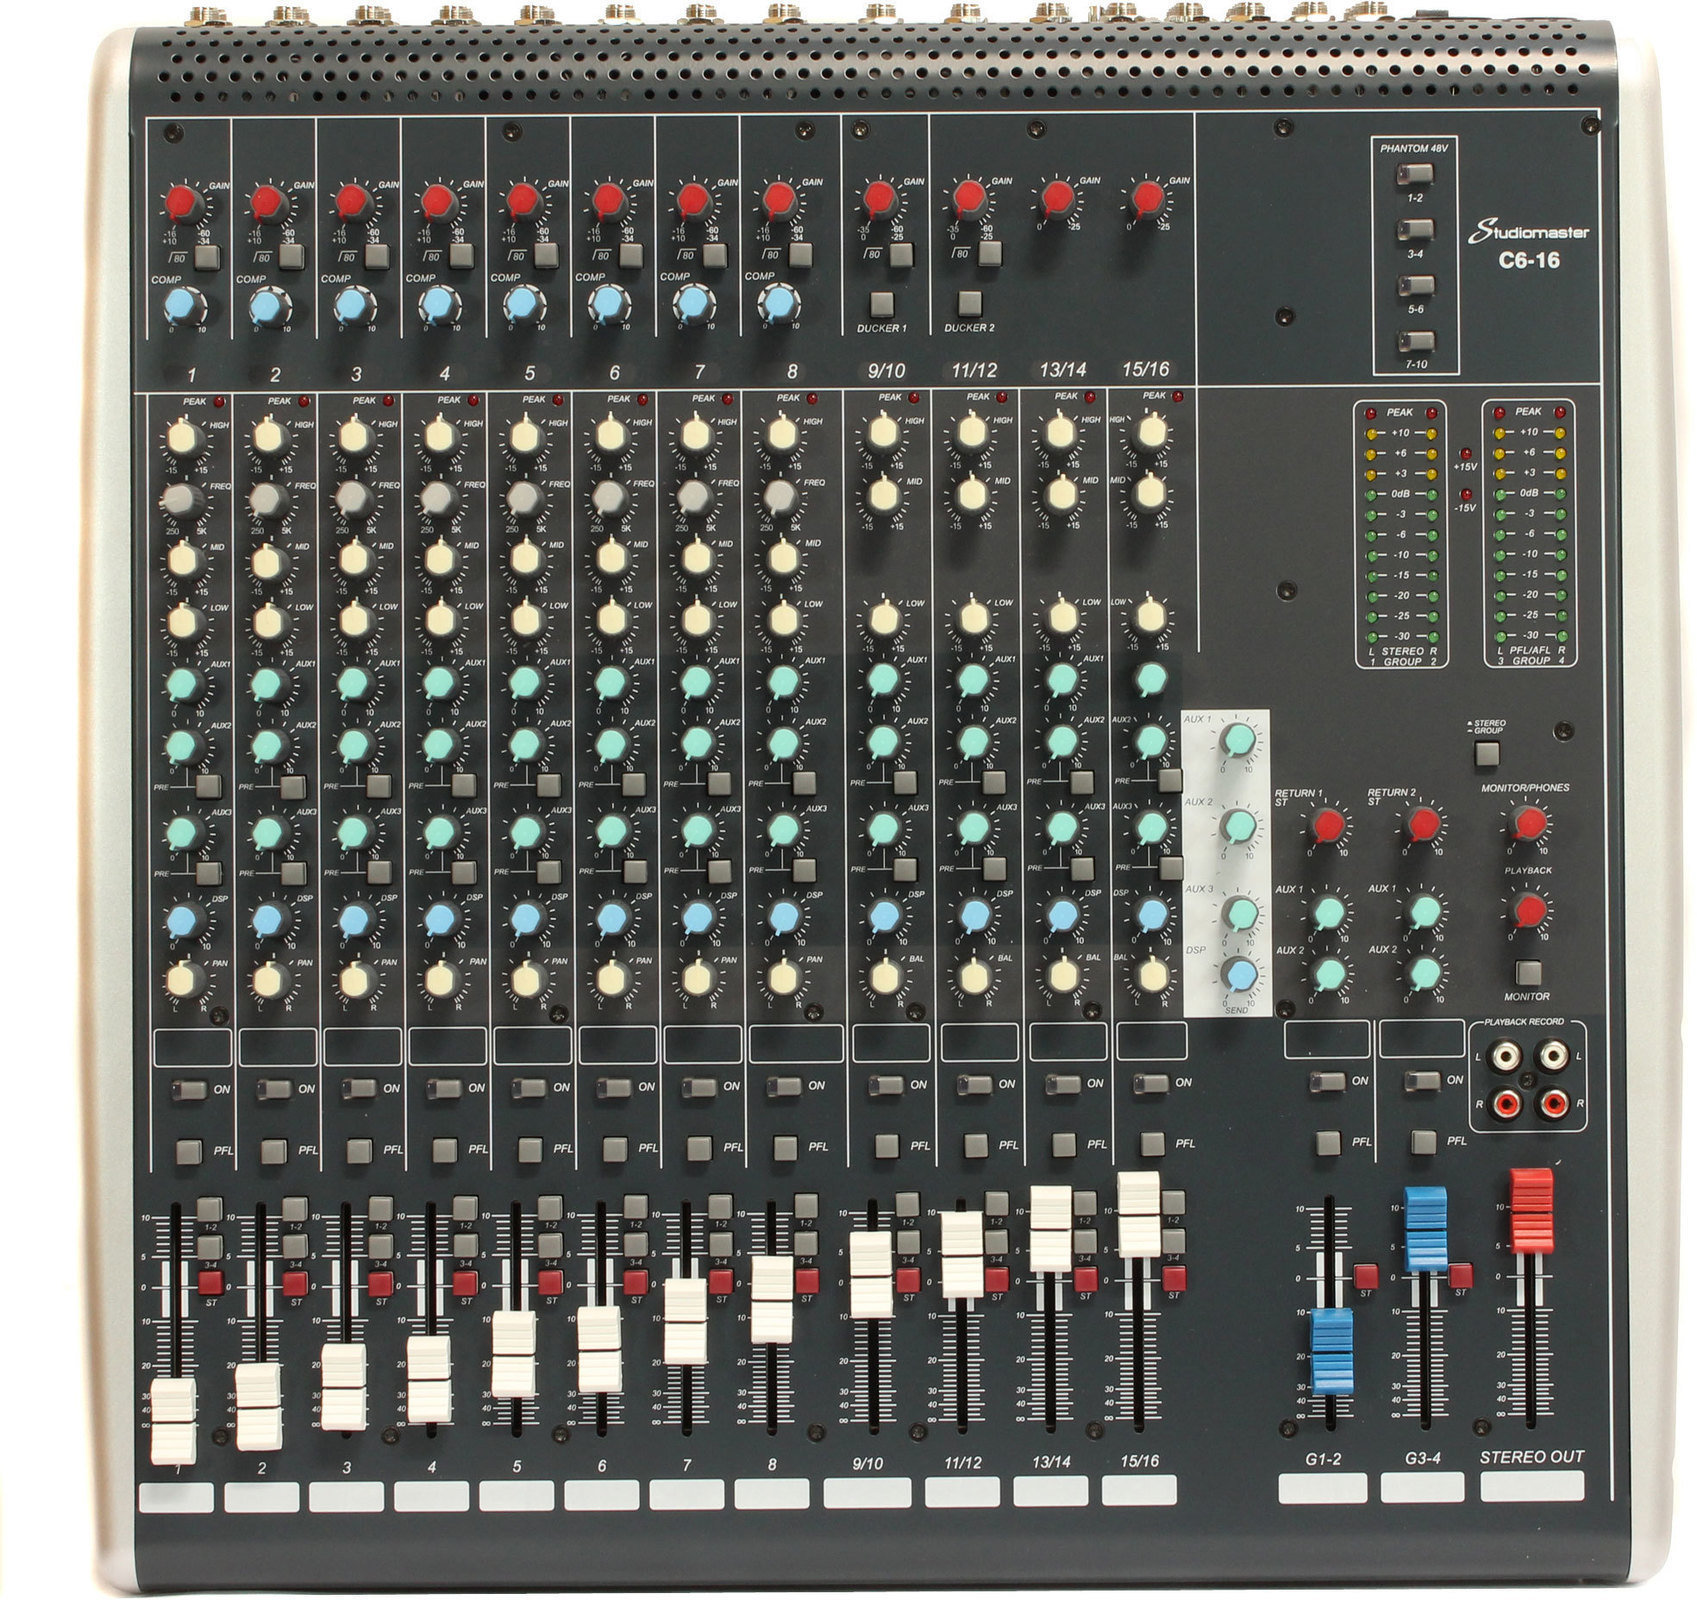 Mikser analogowy Studiomaster C6-16